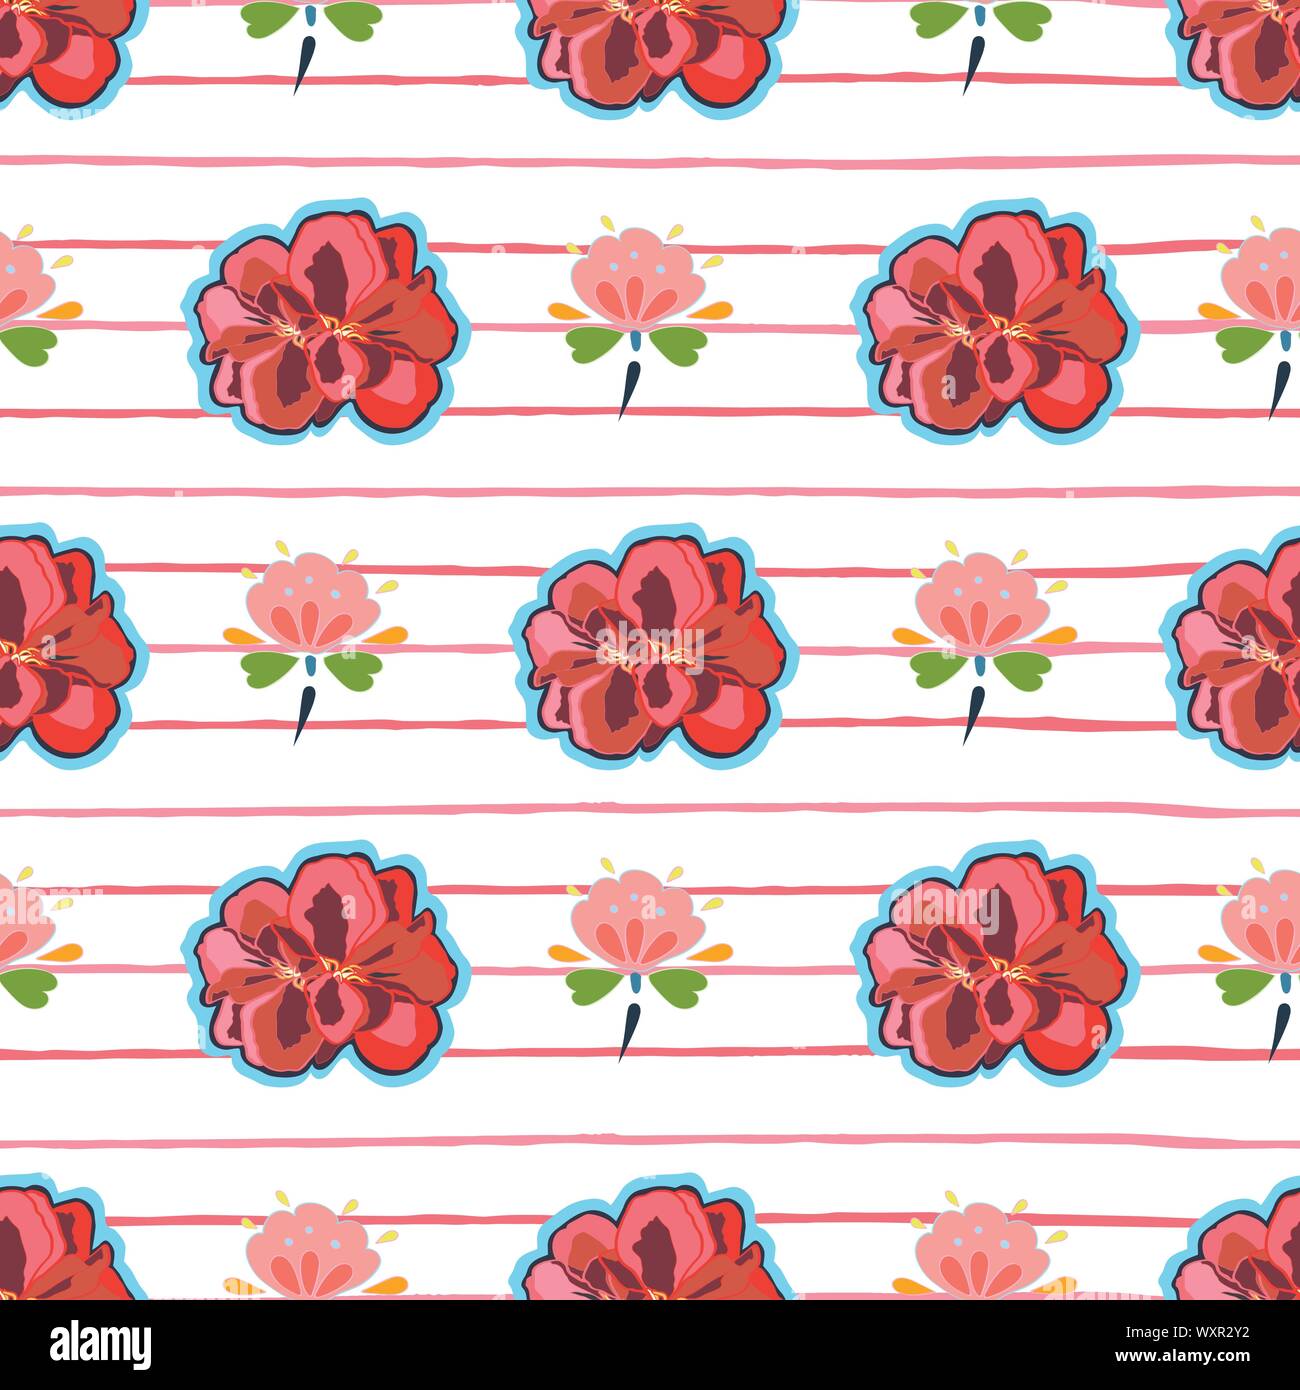 Weiß vektor Rapport mit roten Geranien blühen, blau Volkskunst florals und roten Streifen. Japan inspiriert. Comic Stil. Perfekt für Papier und Textilien Projekte oder Veranstaltungen. Oberfläche pattern Design. Stock Vektor